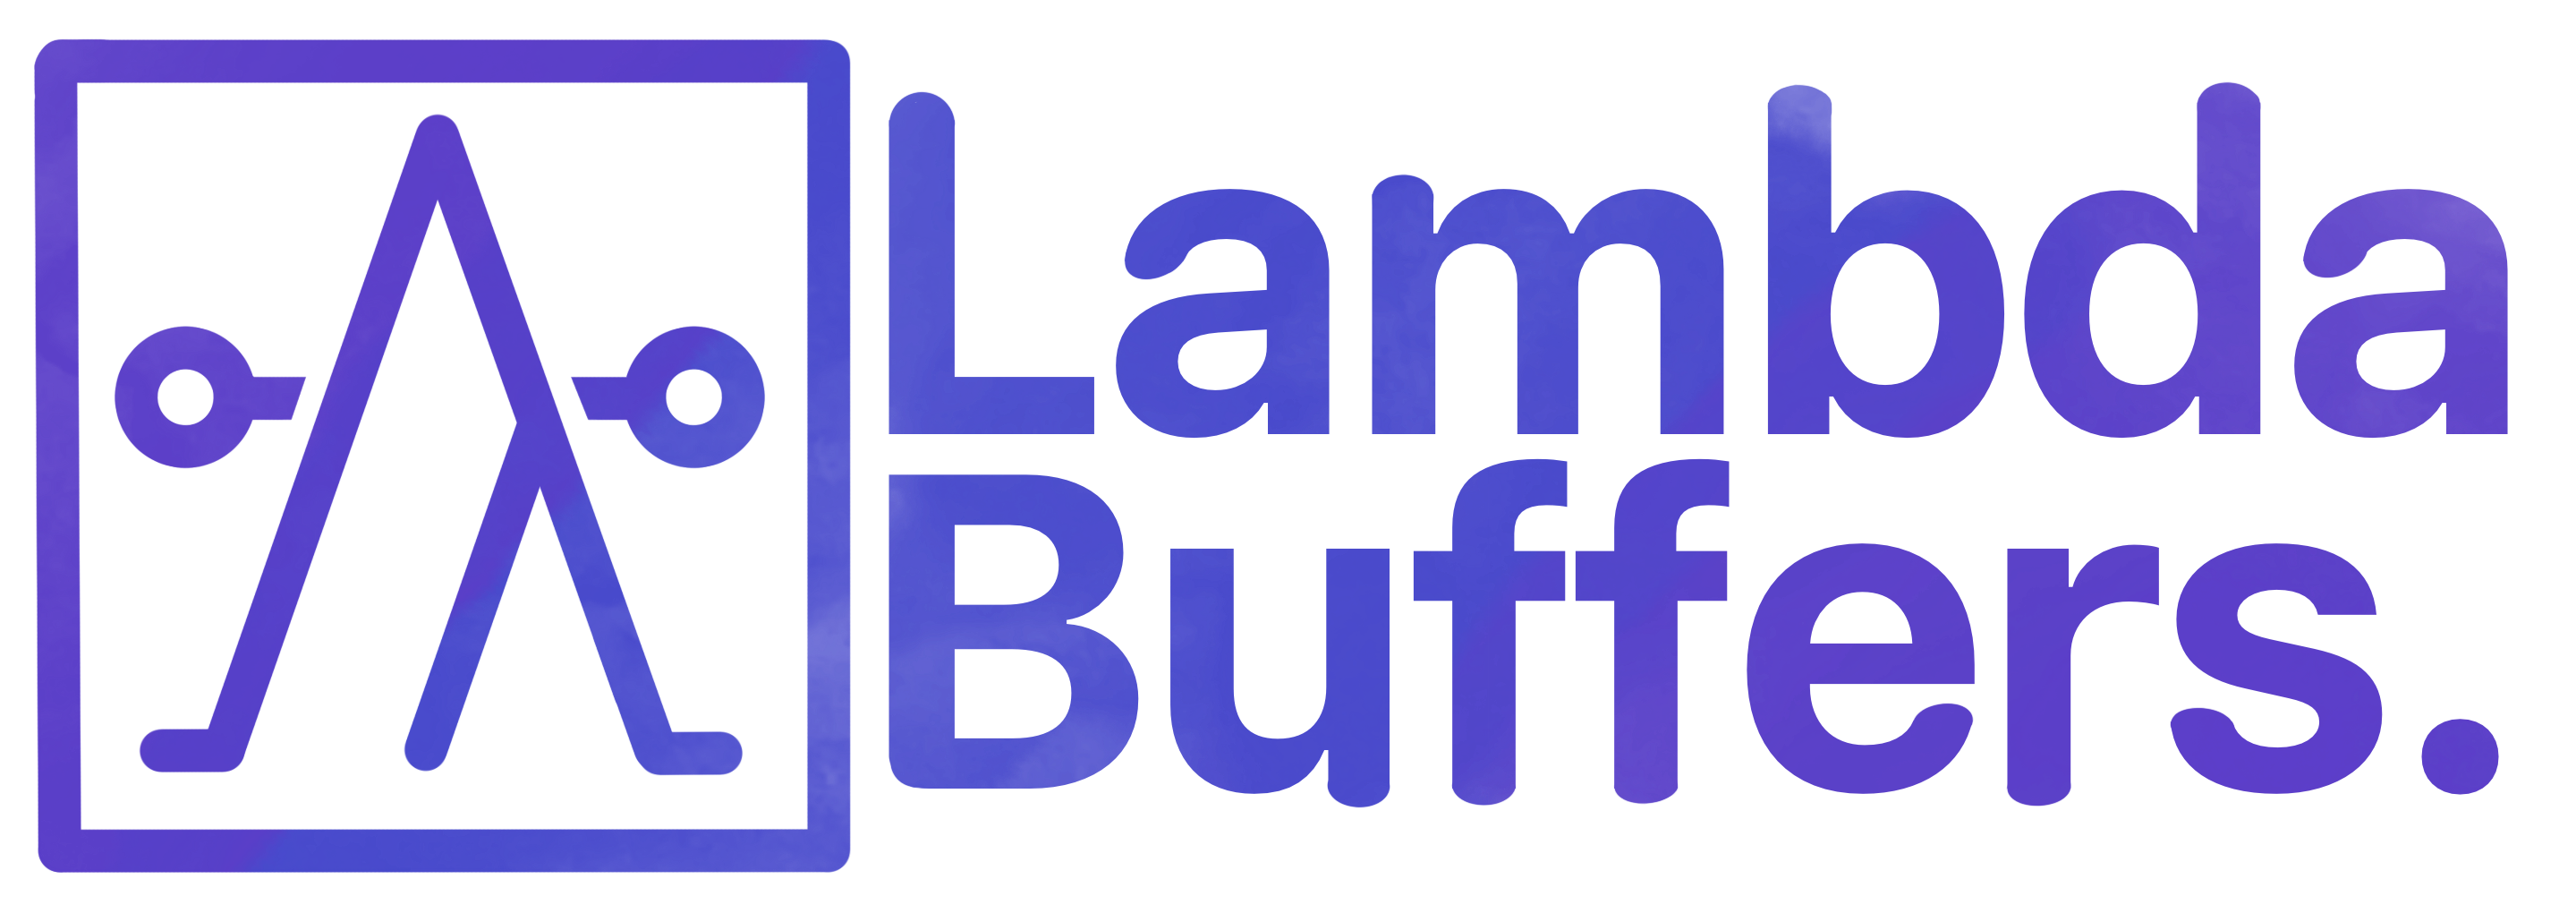 LambdaBuffers banner